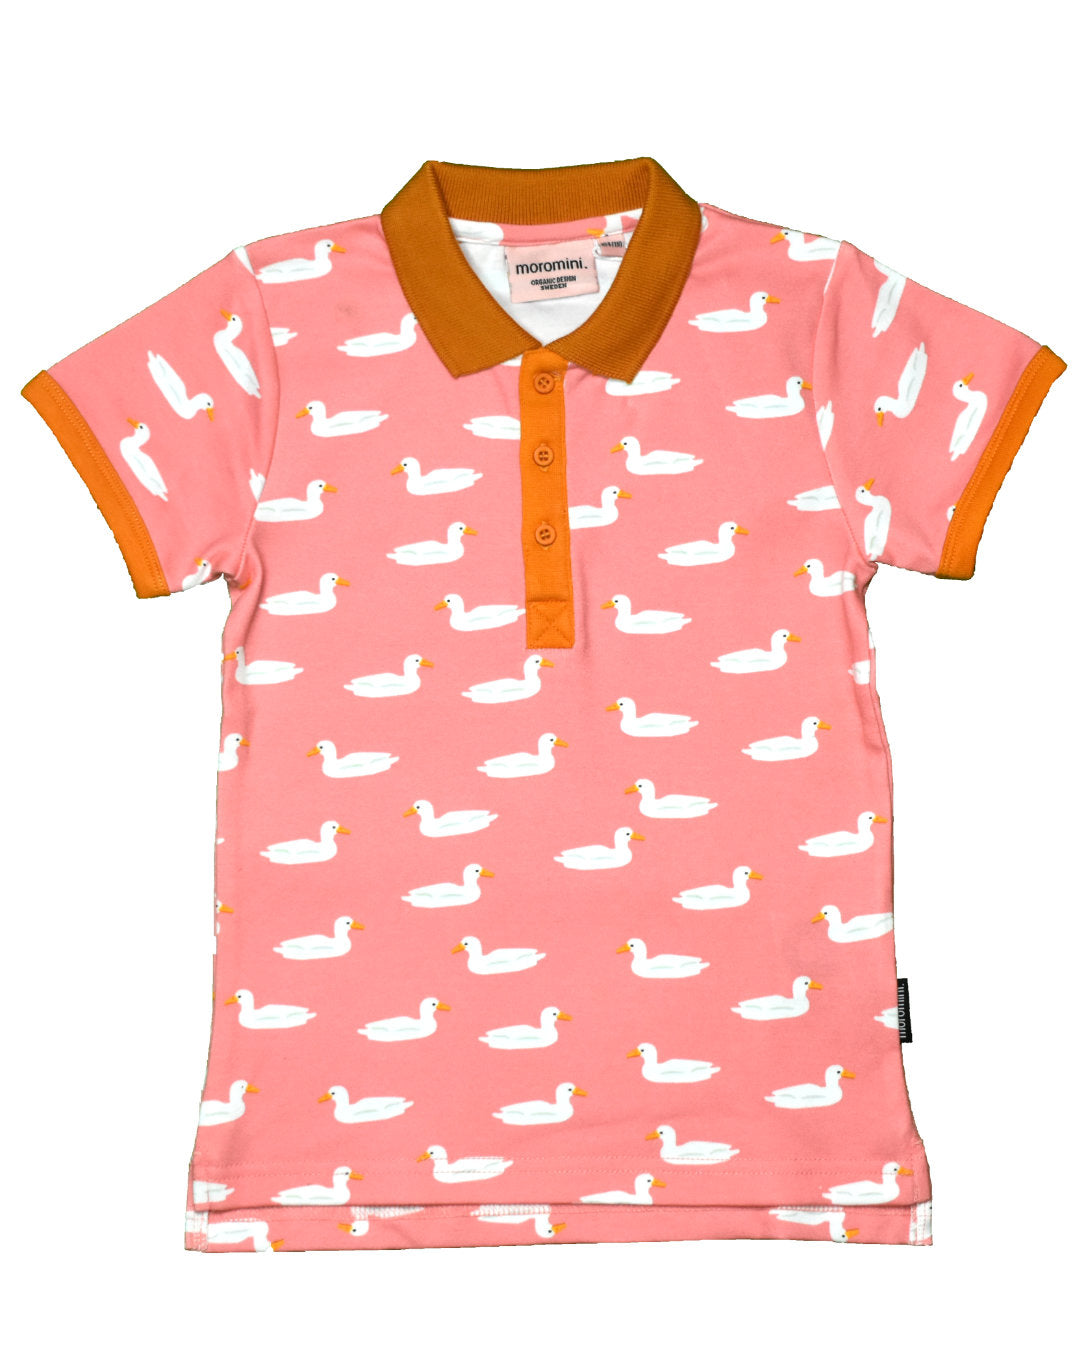 Polo T-Shirt in rosa mit weißen Enten aus Biobaumwolle von moromini für Kinder